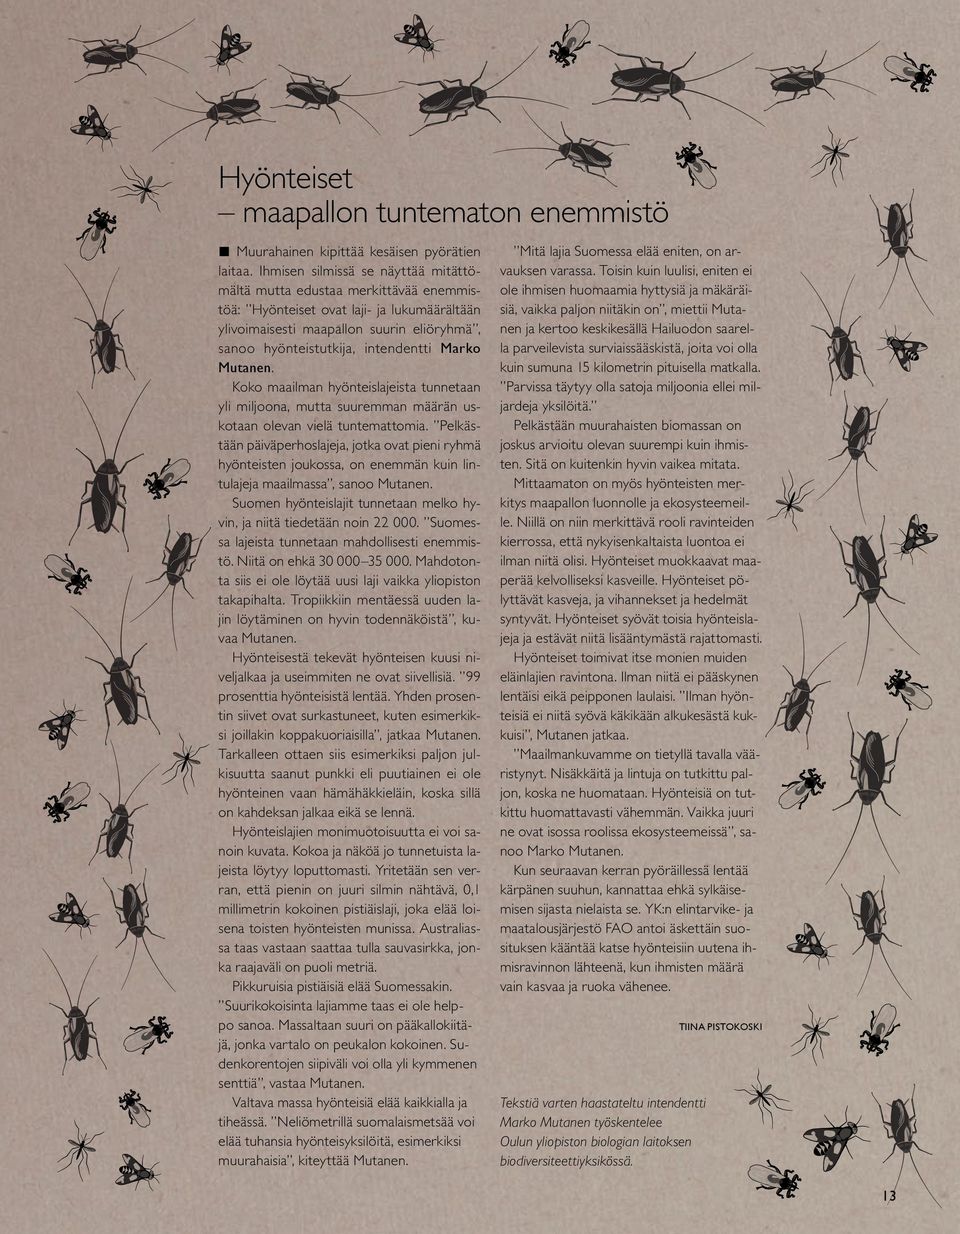 Marko Mutanen. Koko maailman hyönteislajeista tunnetaan yli miljoona, mutta suuremman määrän uskotaan olevan vielä tuntemattomia.